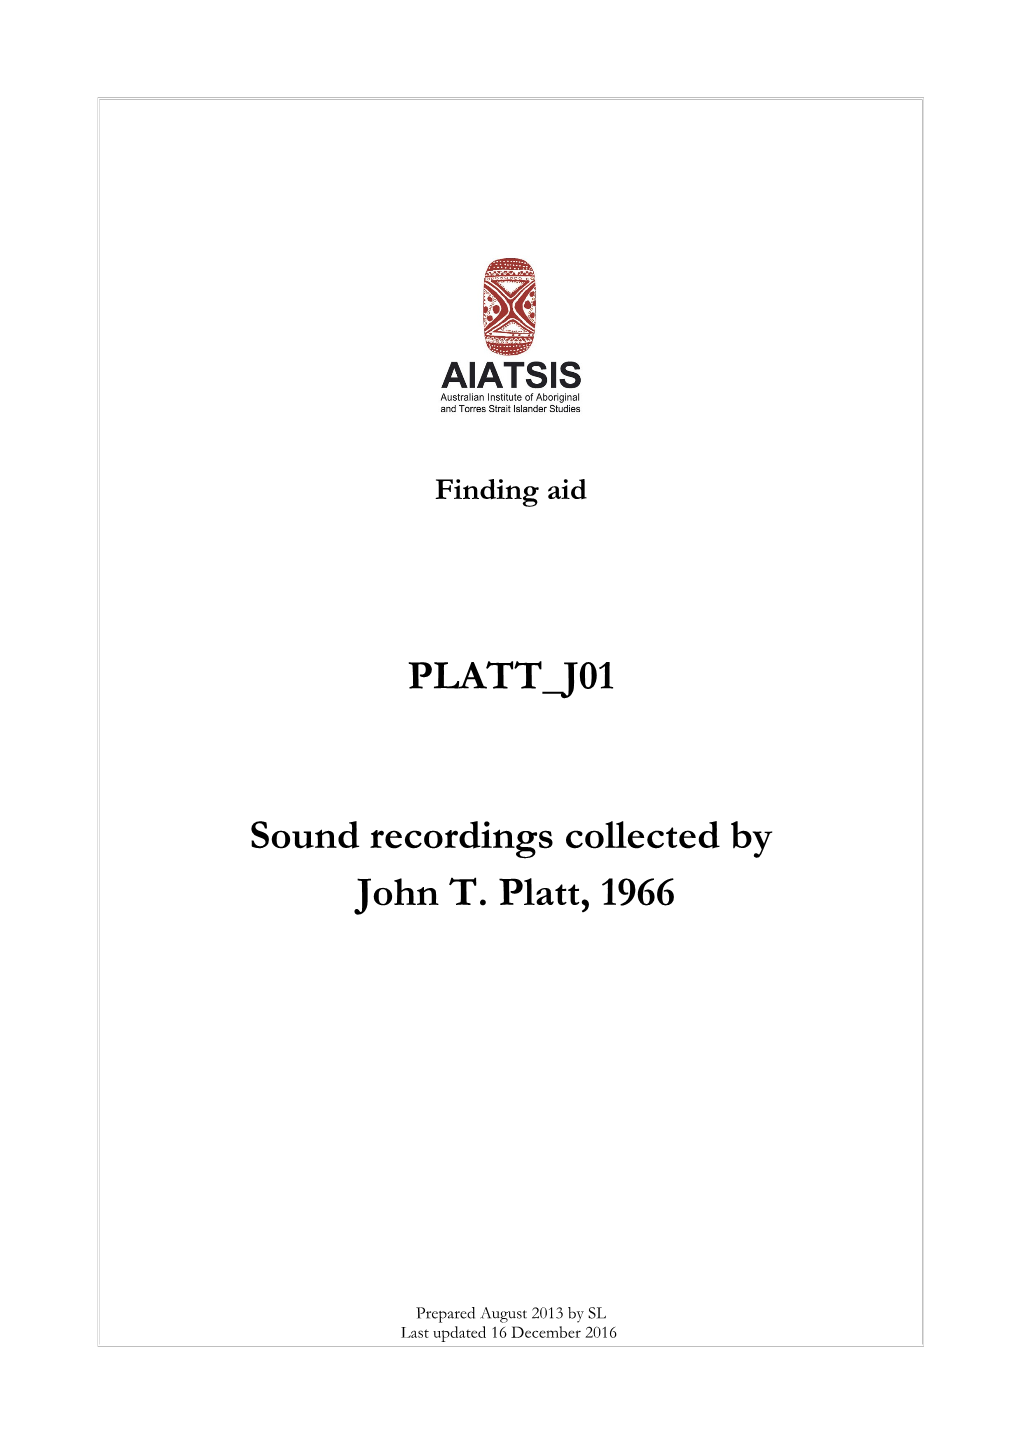 PLATT J01 Sound Recordings Collected by John T. Platt, 1966